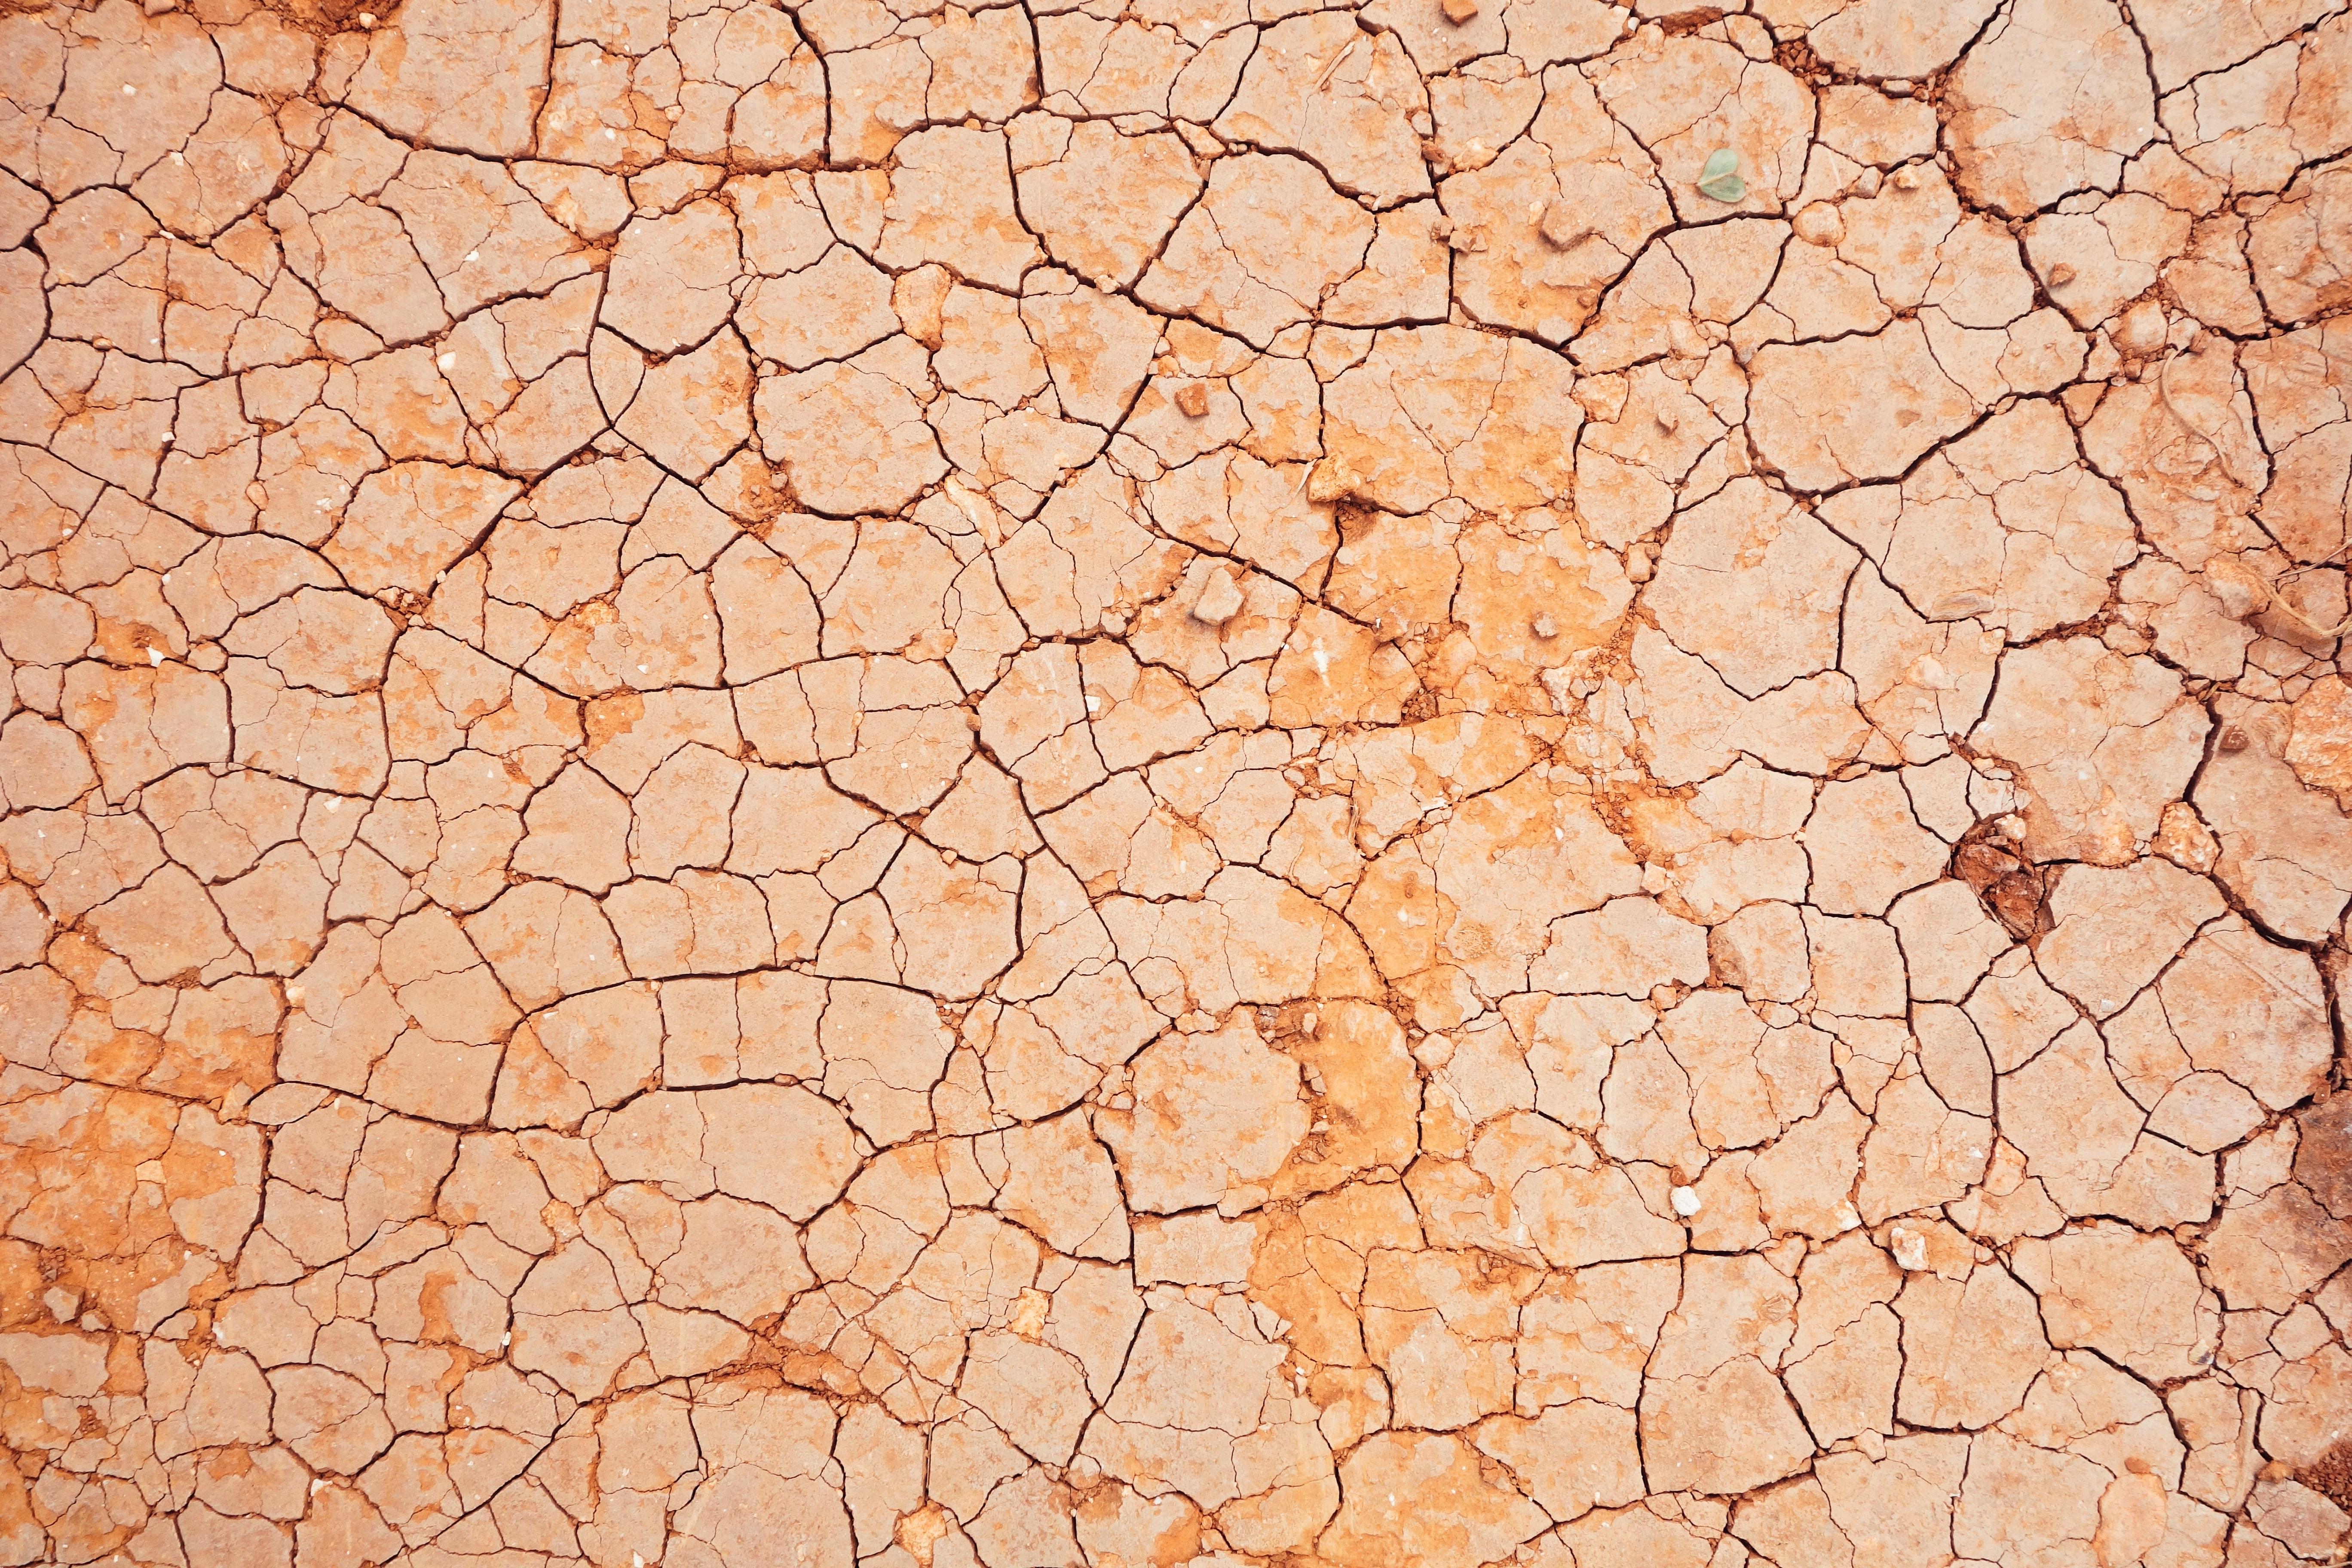 Tierra seca agrietada formando patrones. Foto de Micaela Parente en Unsplash